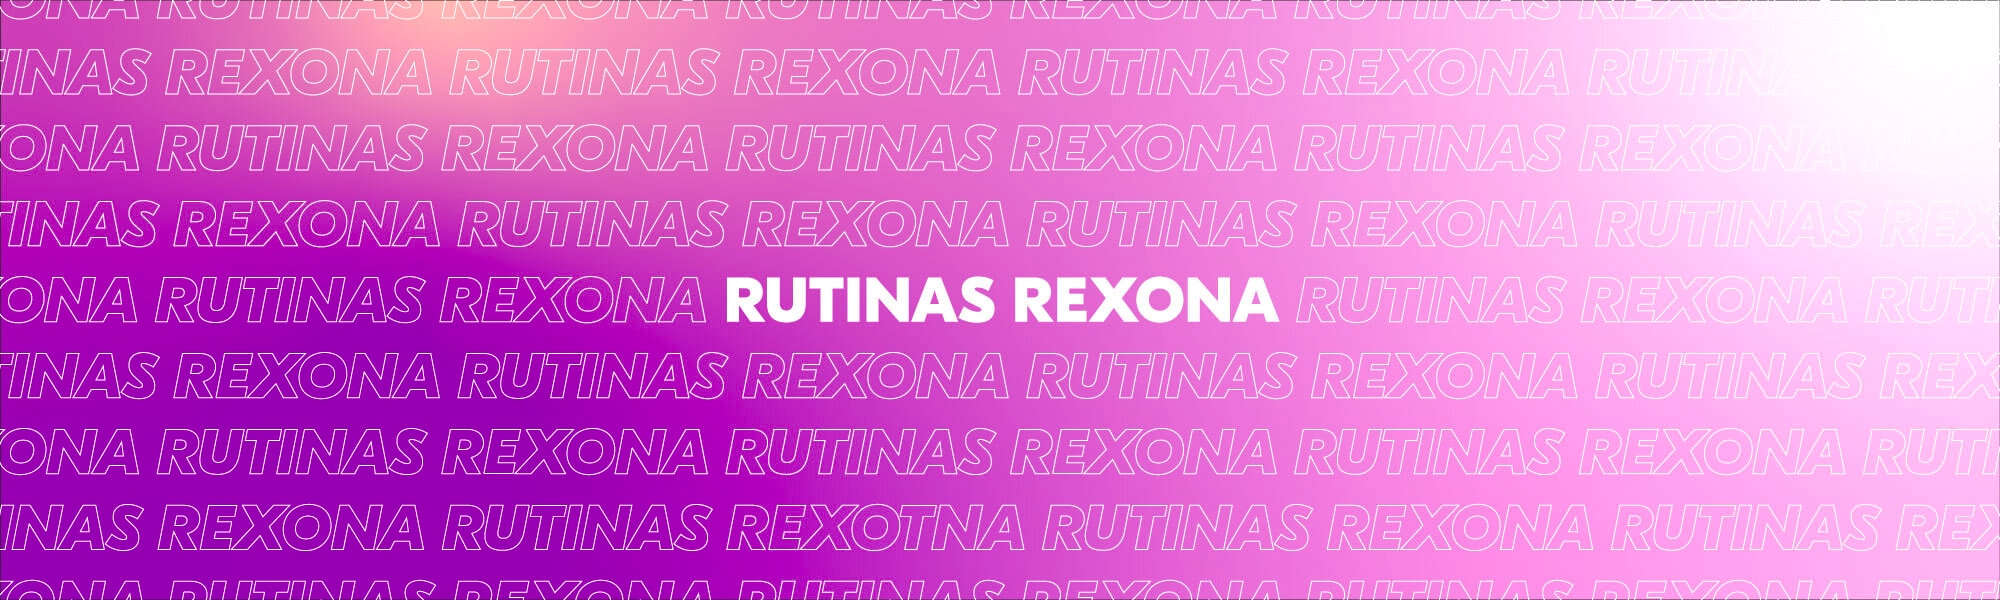 Rutinas Rexona 